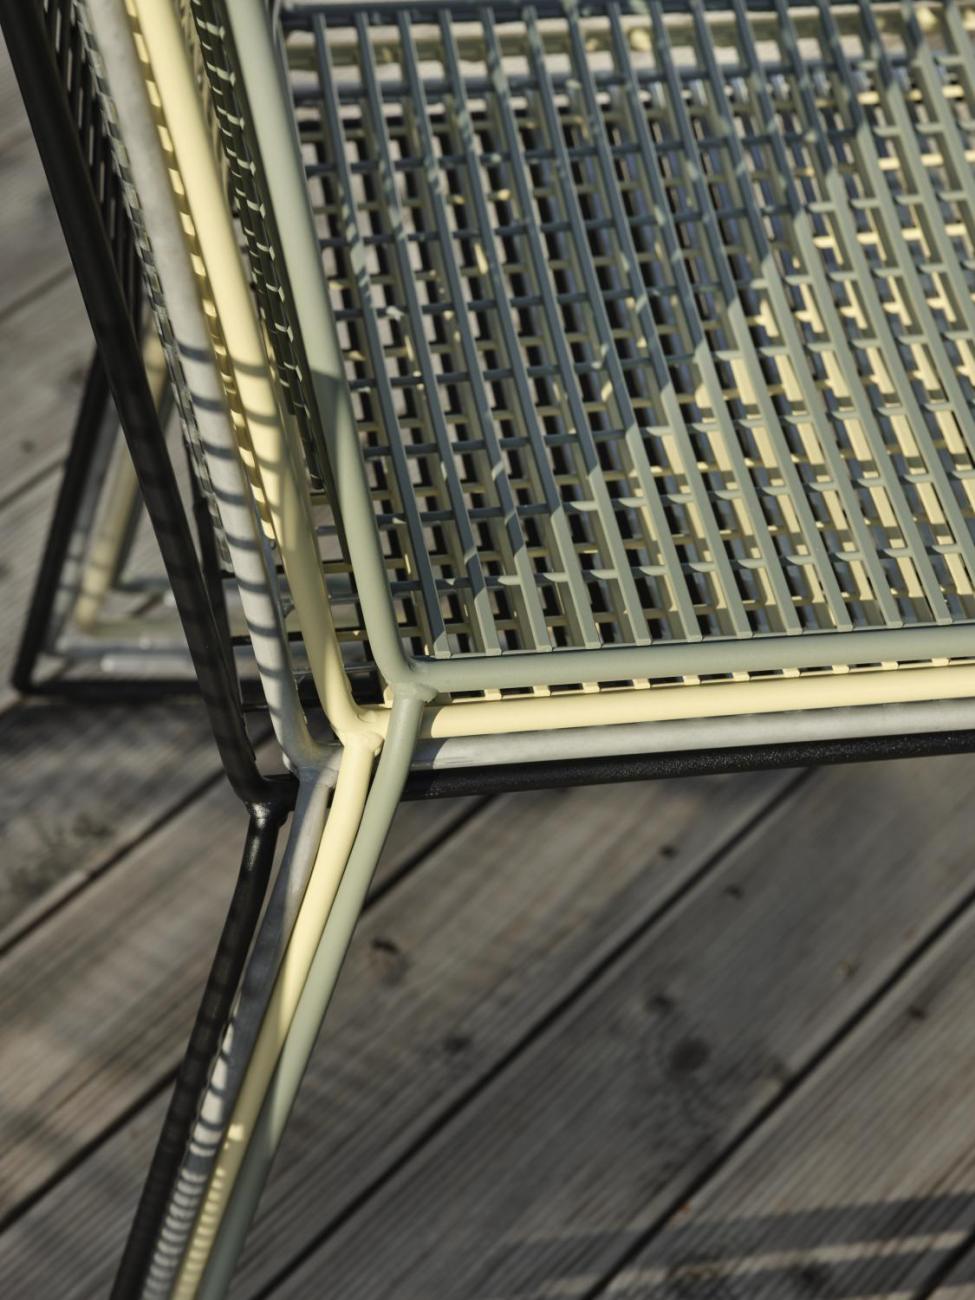 Der Gartenstuhl Sinarp überzeugt mit seinem modernen Design. Gefertigt wurde er aus Metall, welches einen grünen Farbton besitzt. Das Gestell ist auch aus Metall und hat eine grüne Farbe. Die Sitzhöhe des Stuhls beträgt 44 cm.